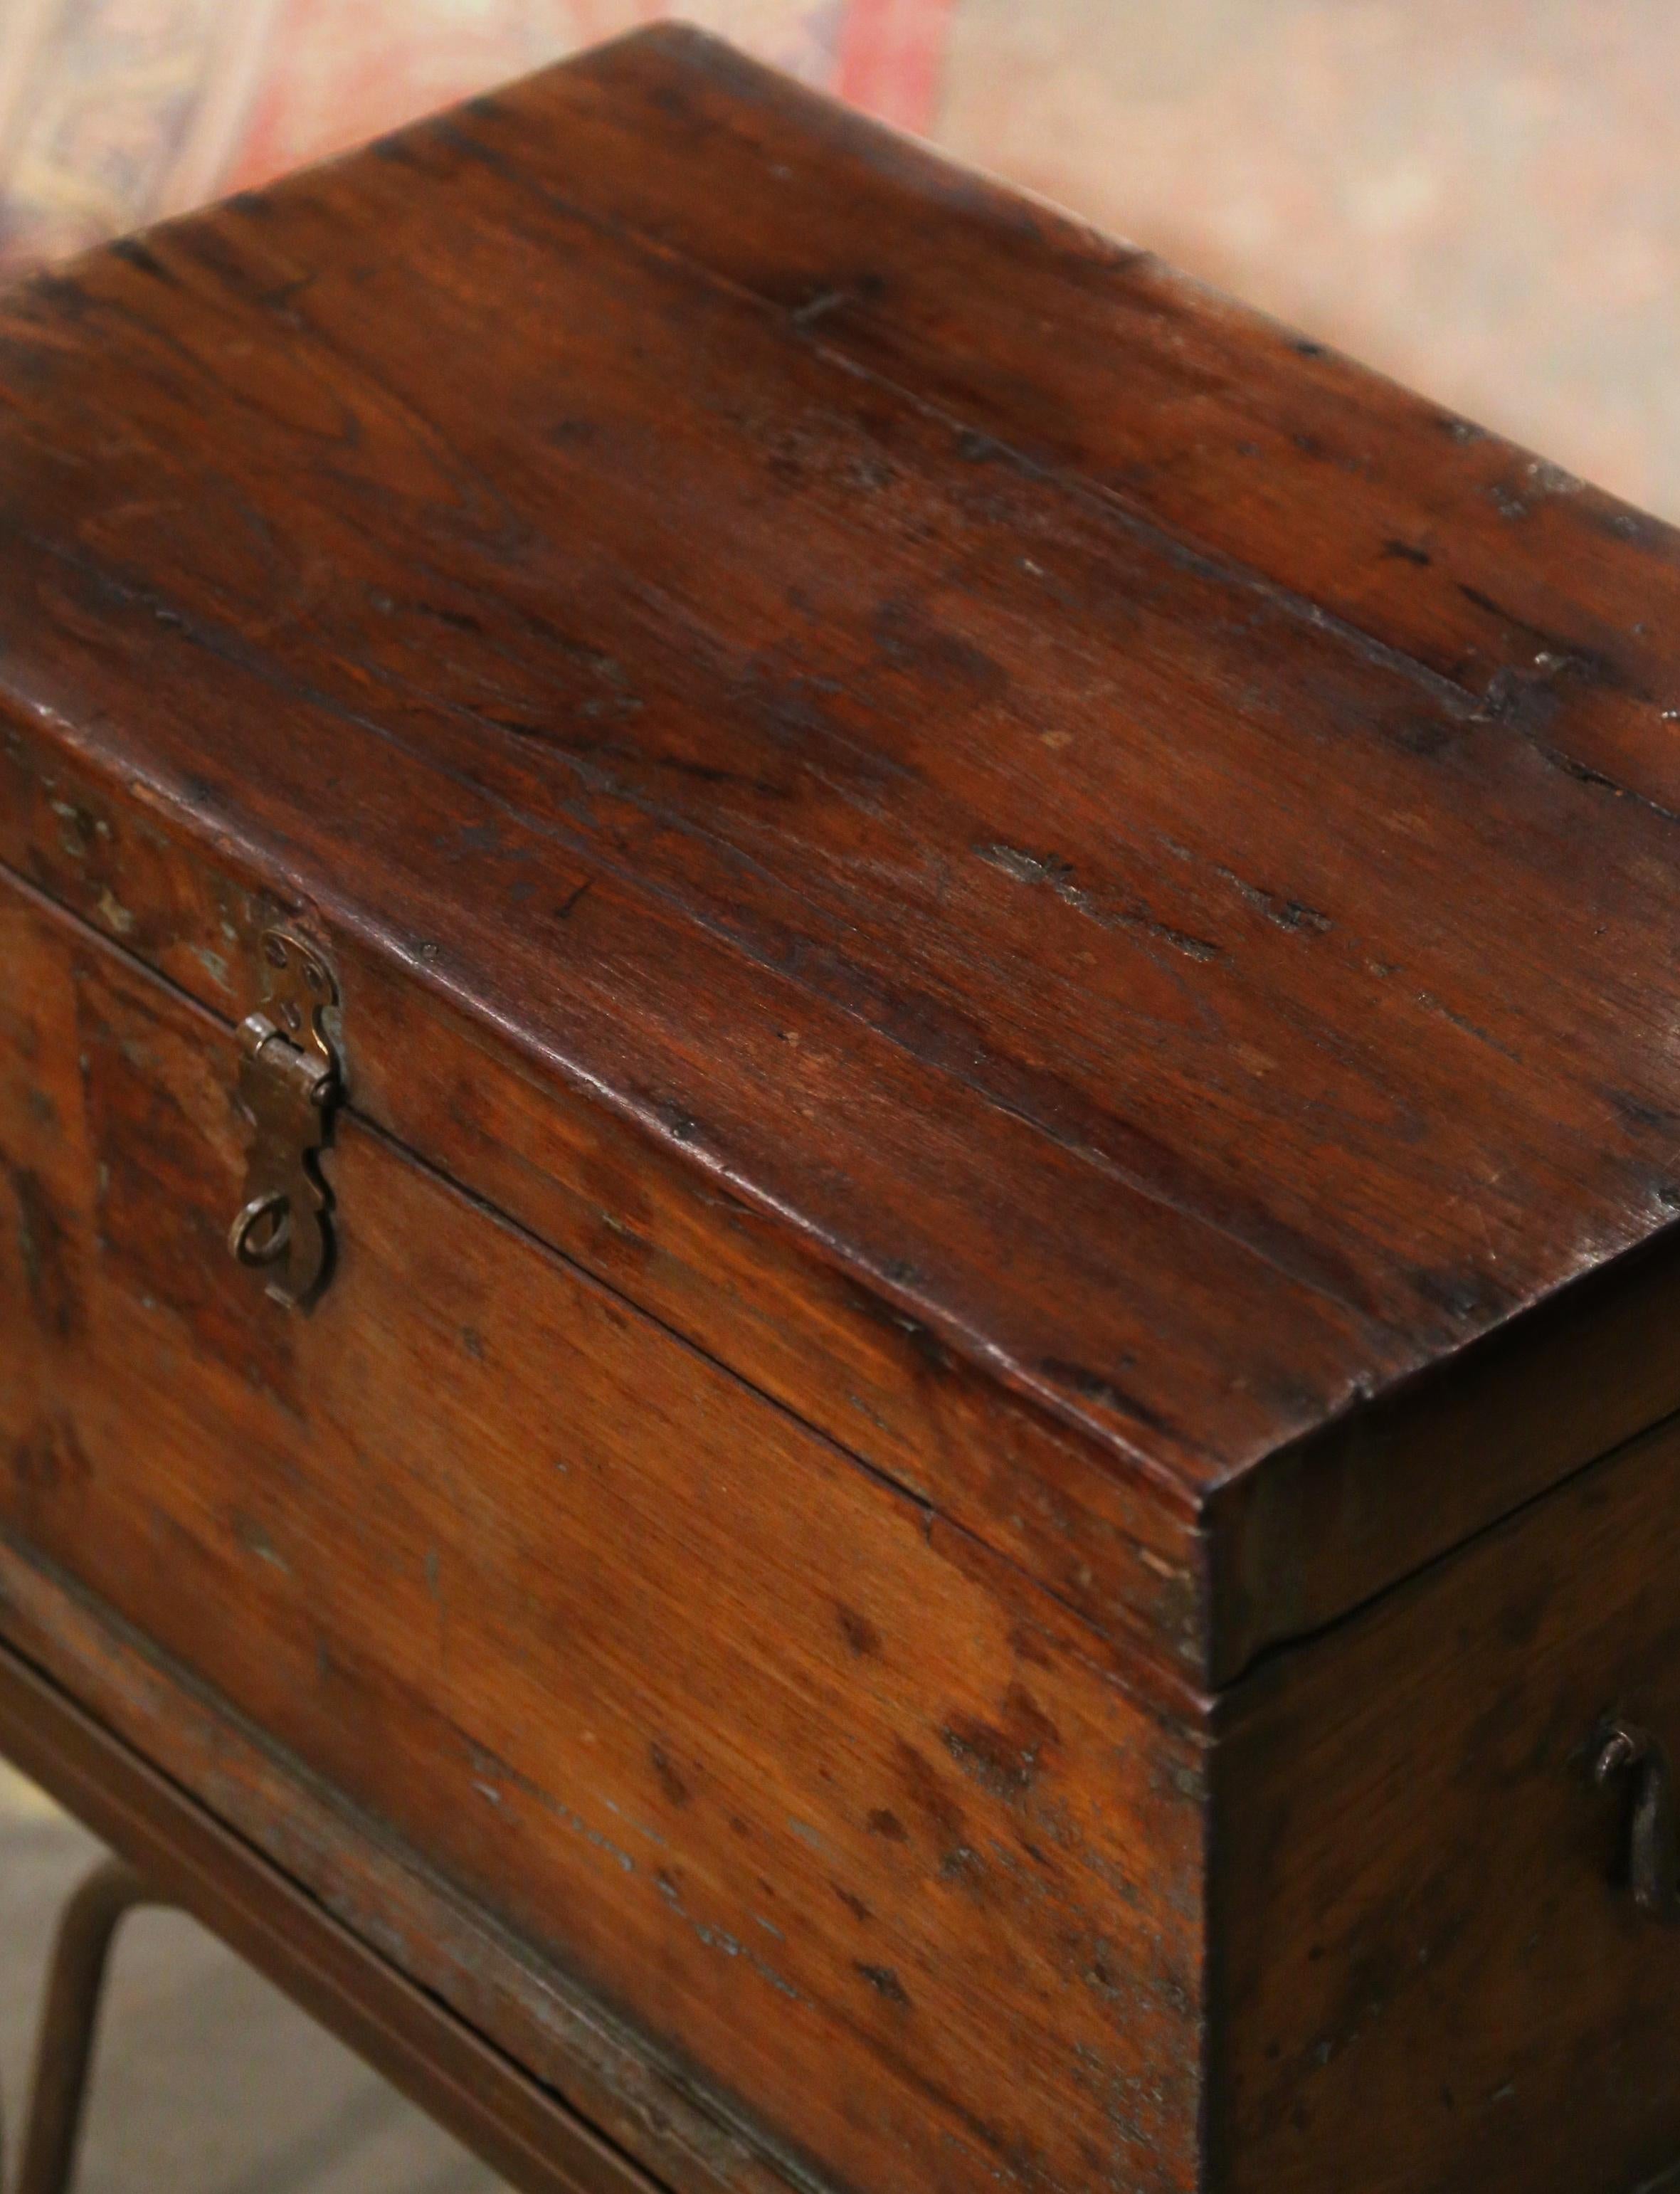 Apportez une touche rustique à votre maison avec cette élégante table d'appoint ancienne. Fabriquée en France vers 1860, cette solide malle de style baroque est dotée de poignées latérales en fer et d'une serrure en fer d'origine sur le devant. Le